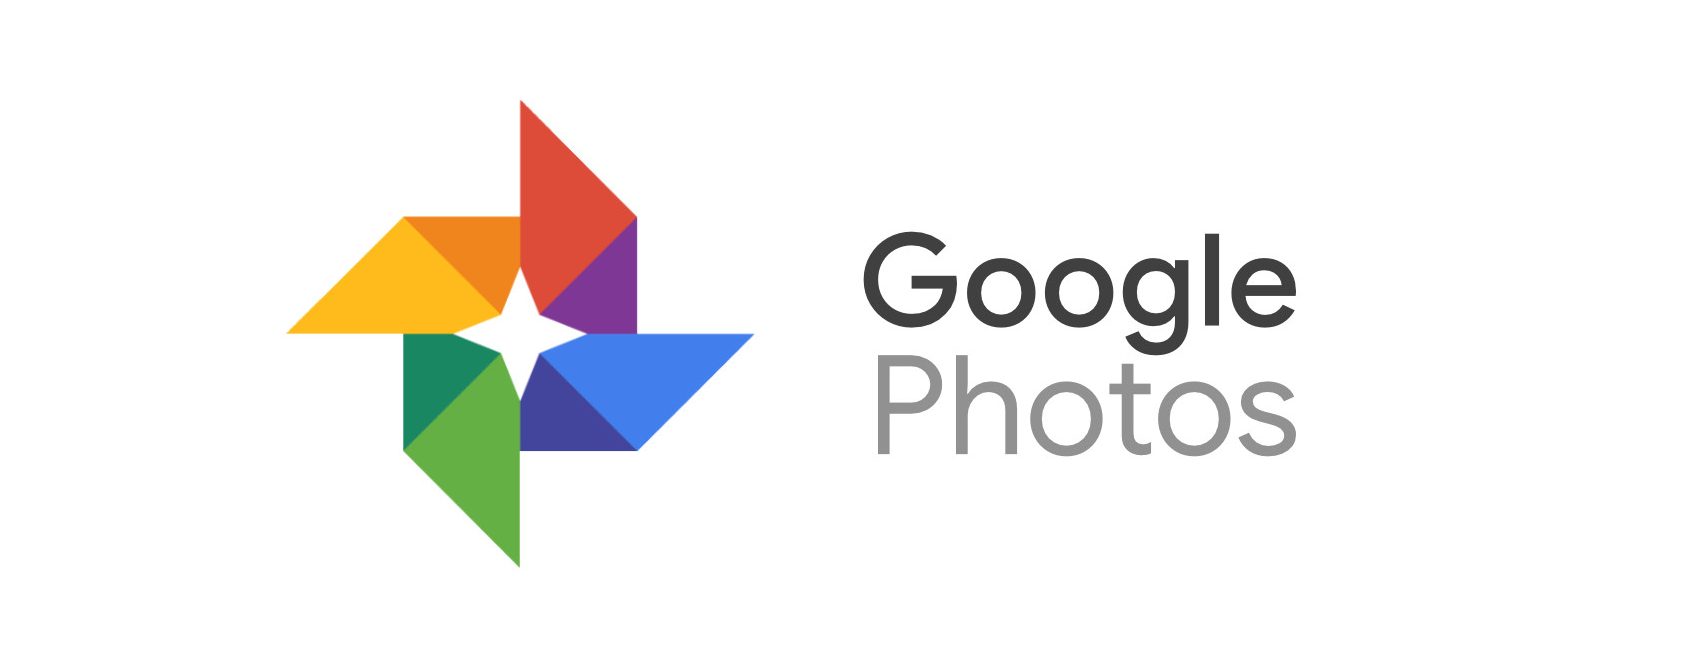 A Google bemutatja az új szolgáltatást, amely a Google Fotók alkalmazásból választ és nyomtat